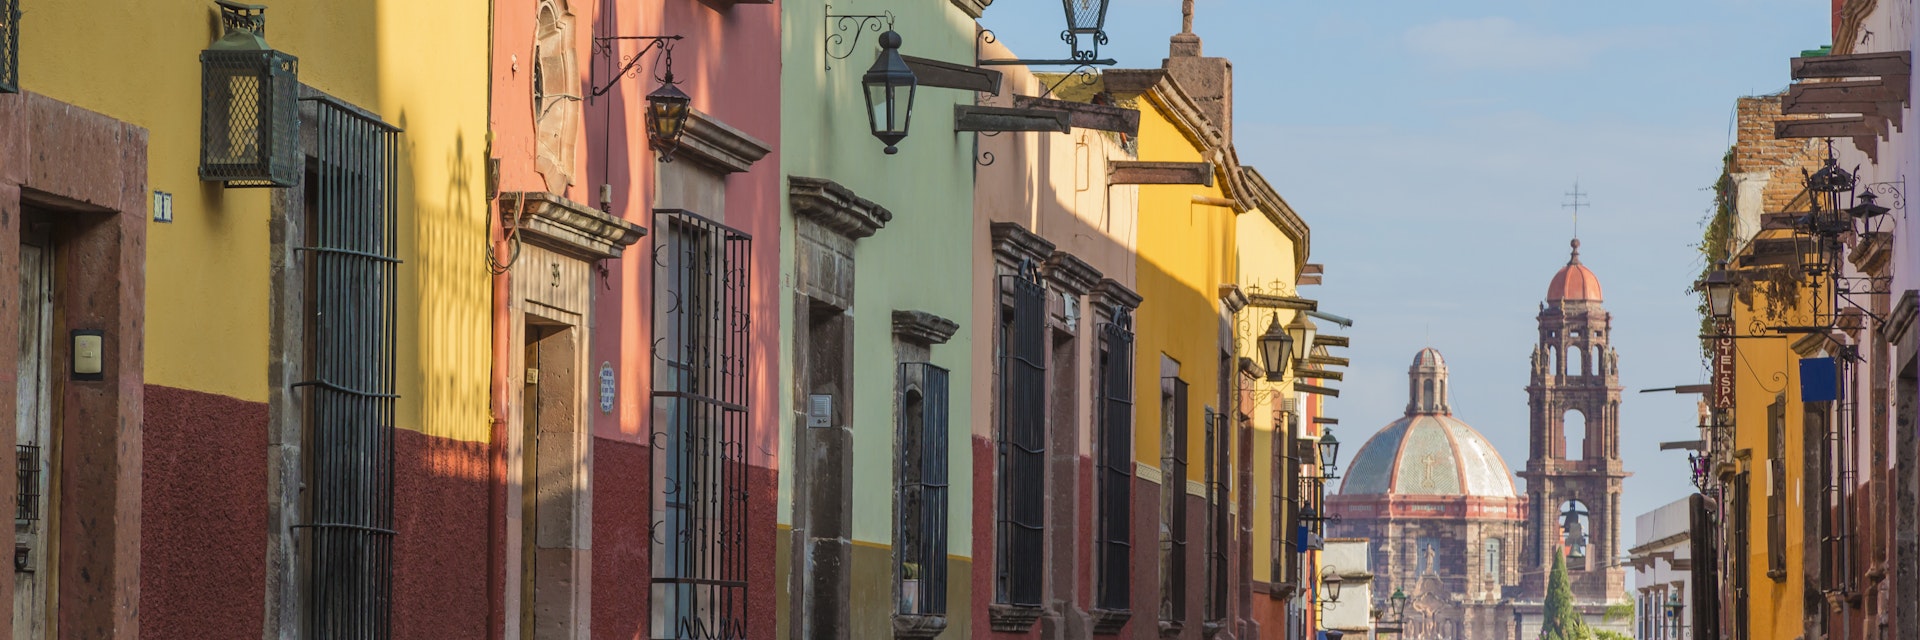 Colorful street scene, Guanajuato, Mexico